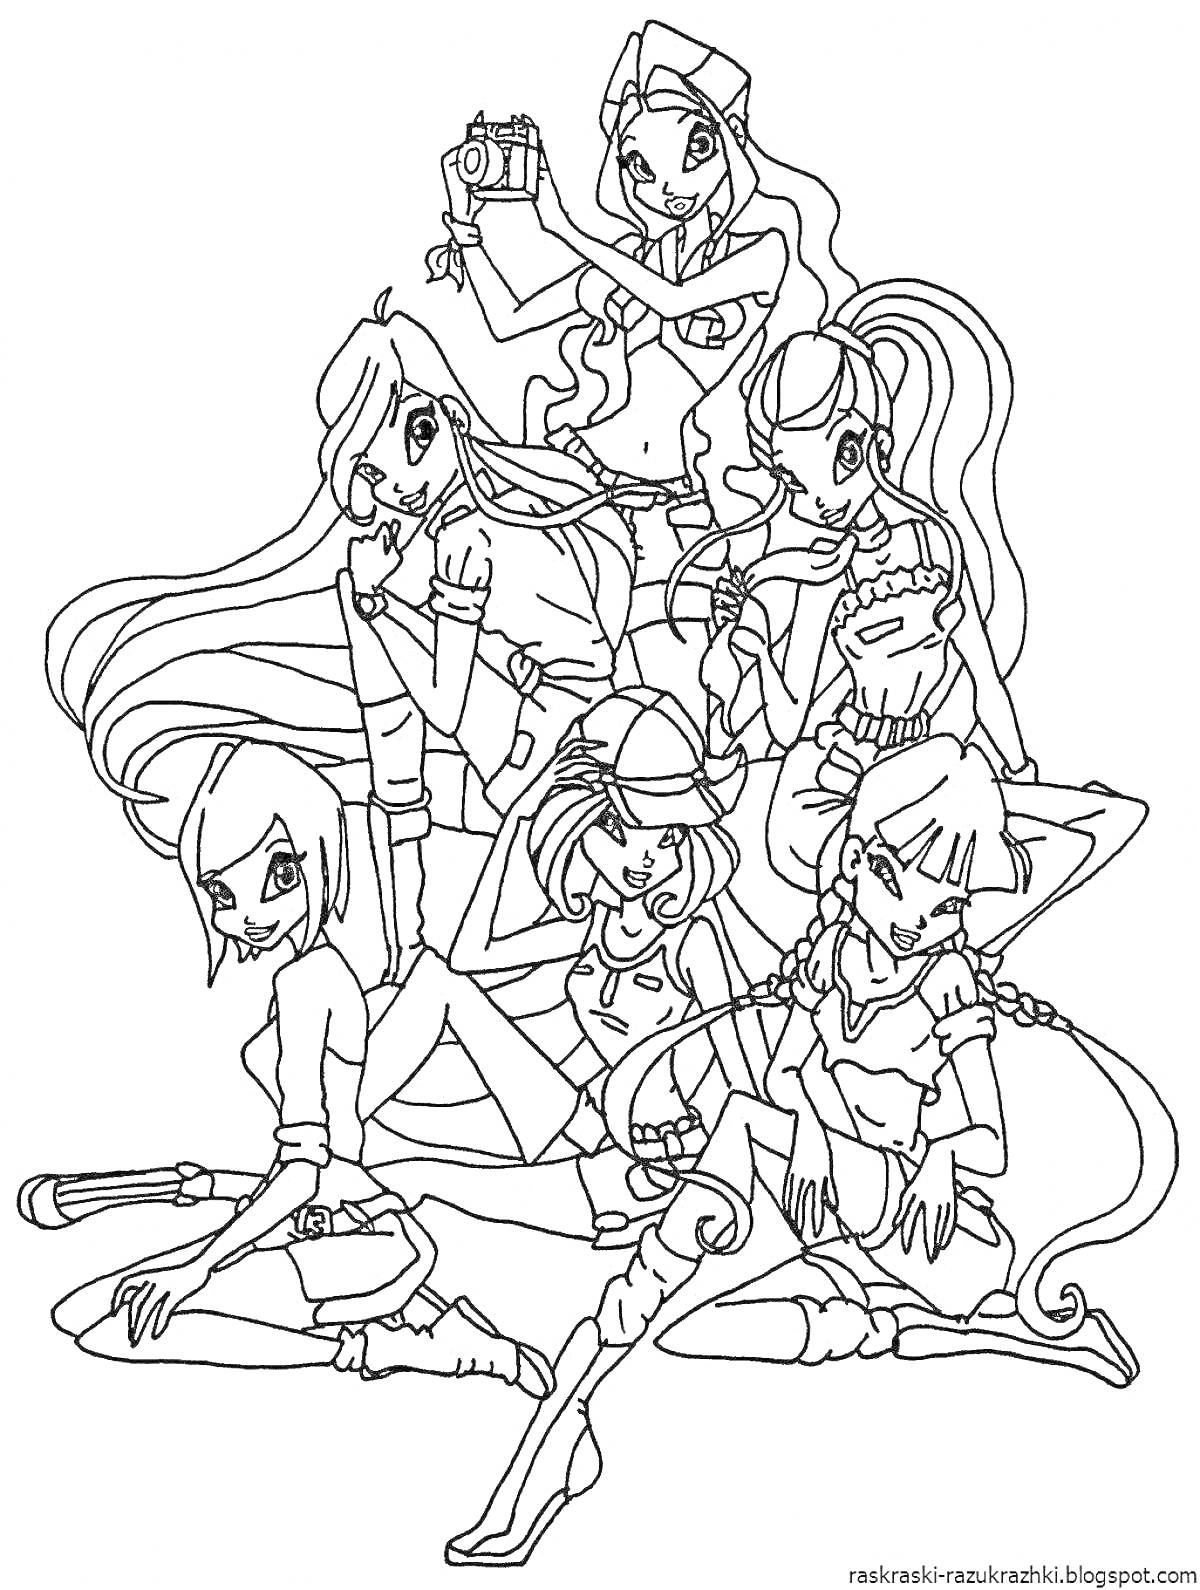 Раскраска Команда Петроникс - семь девушек с разной экипировкой (фотоаппарат, микрофон, планшет, лупа, верёвка)